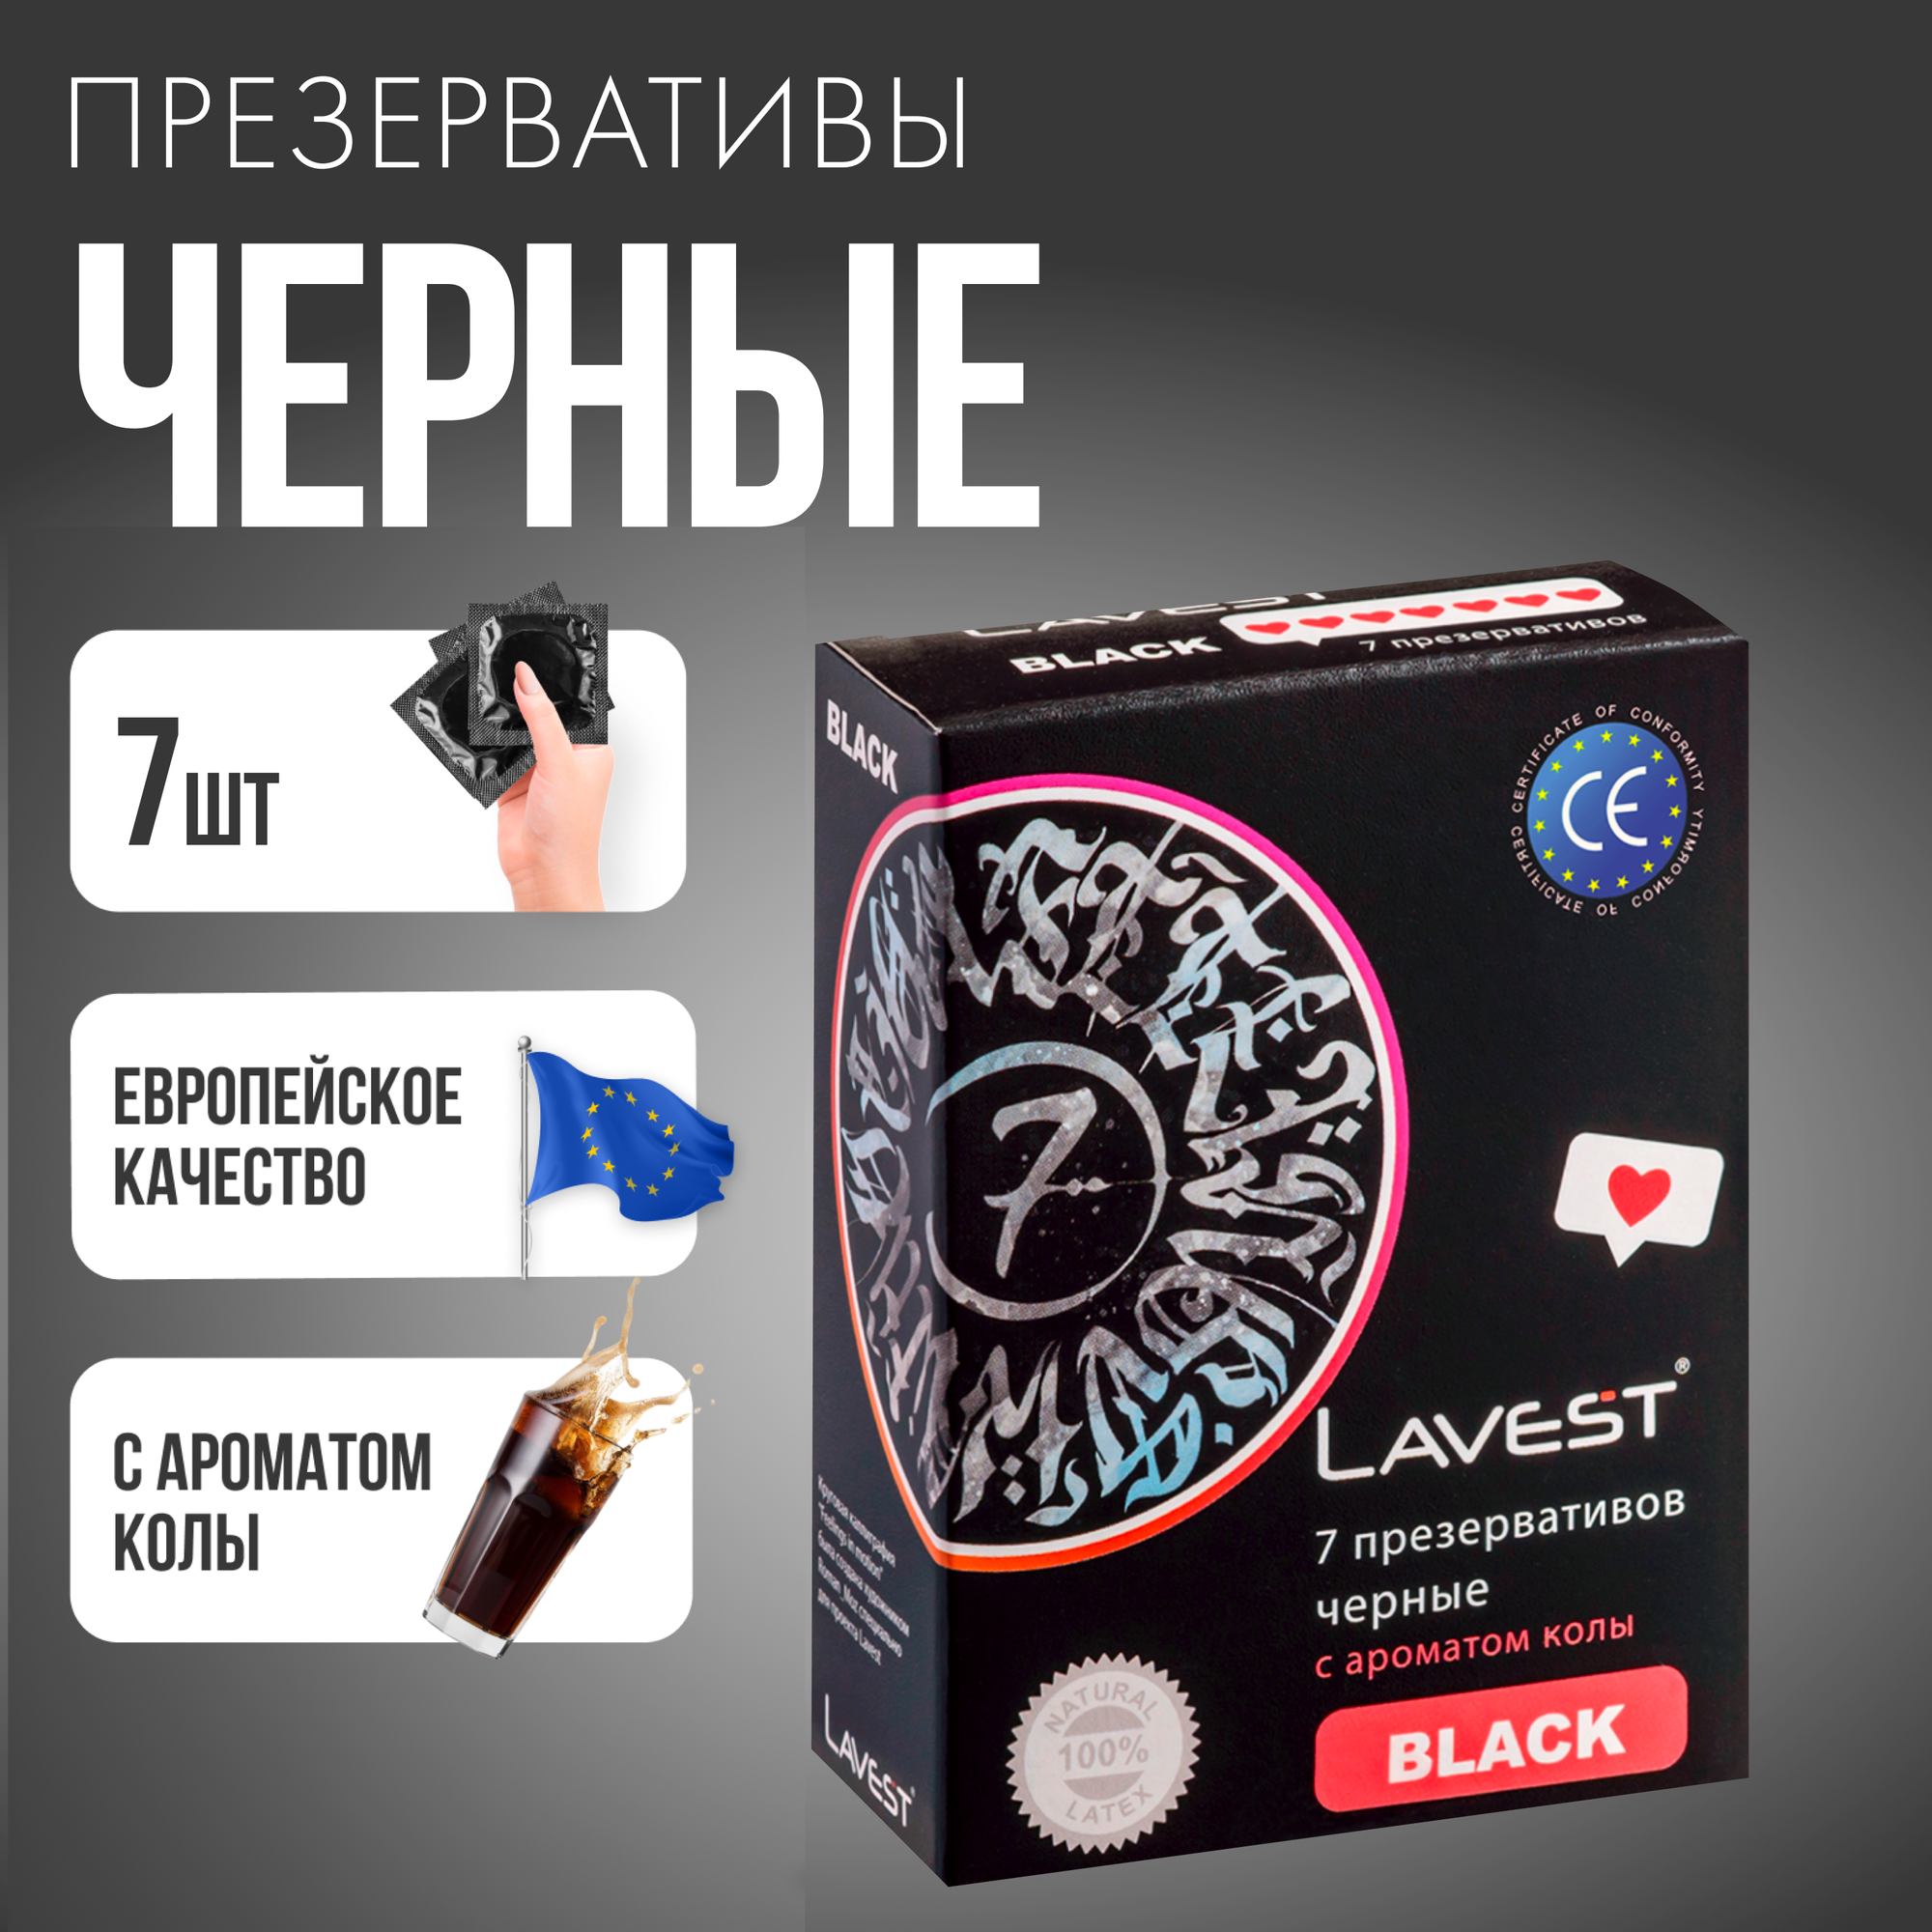 Lavest Black черные презервативы с ароматом колы 7 шт